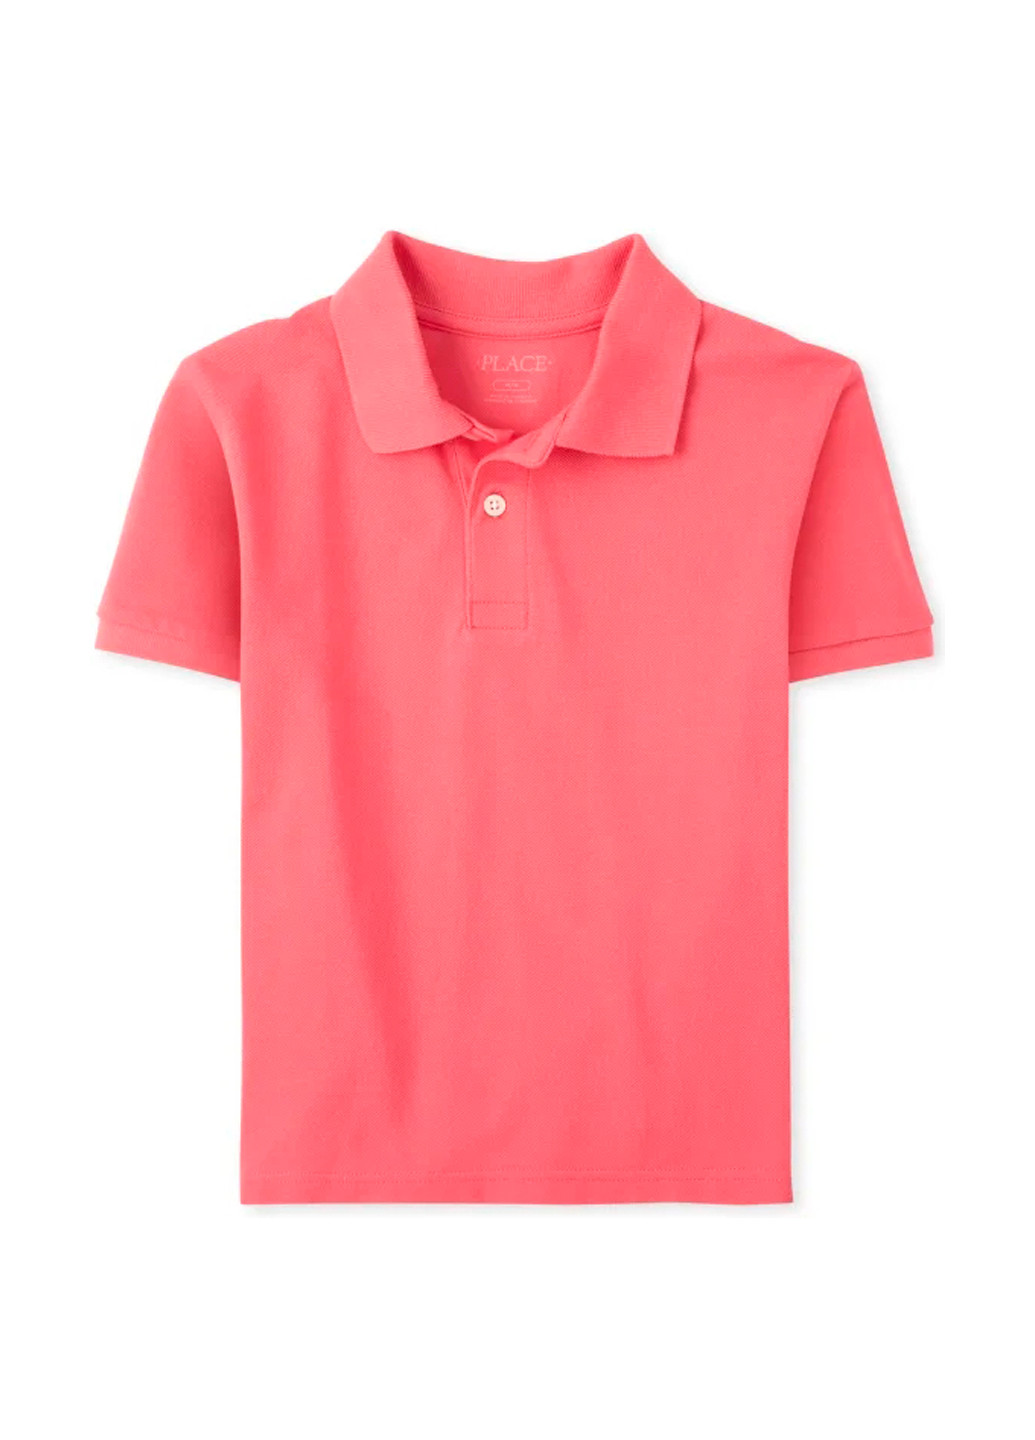 Розовая детская футболка-поло для мальчика The Children's Place однотонная